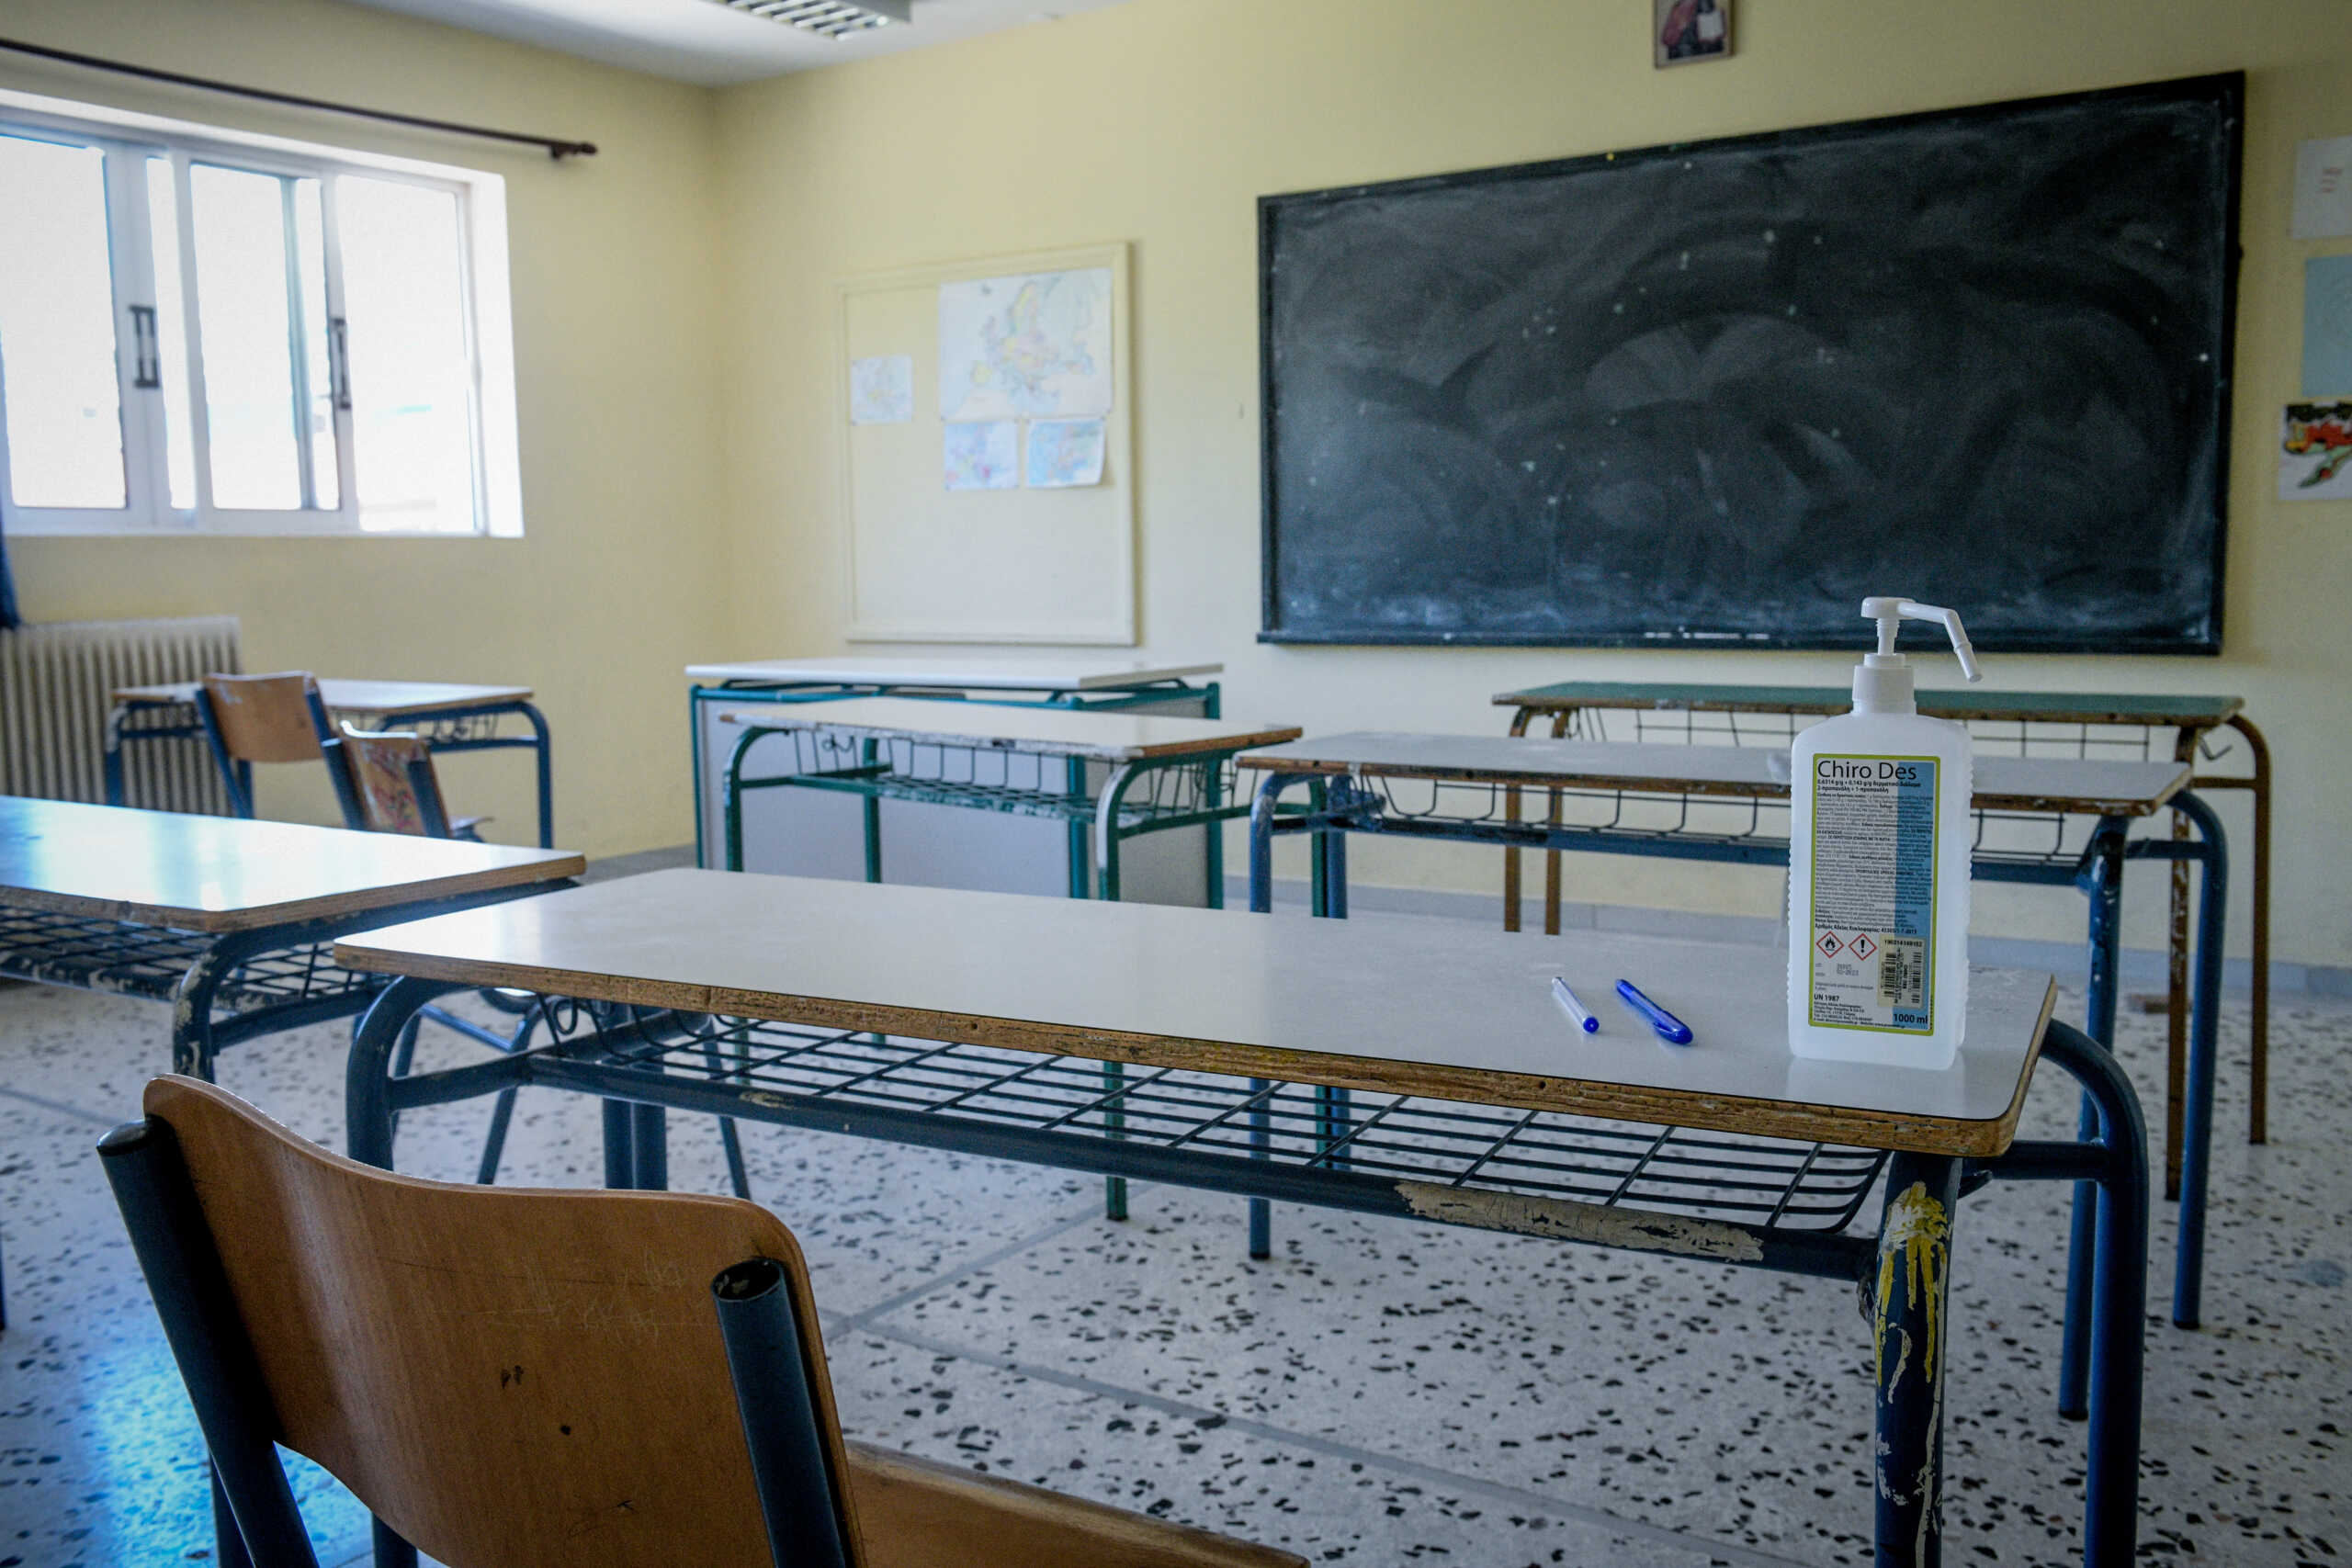 Ρέθυμνο: Επίθεση και ξυλοδαρμός καθηγήτριας από μαθητή σε σχολείο την ώρα του μαθήματος